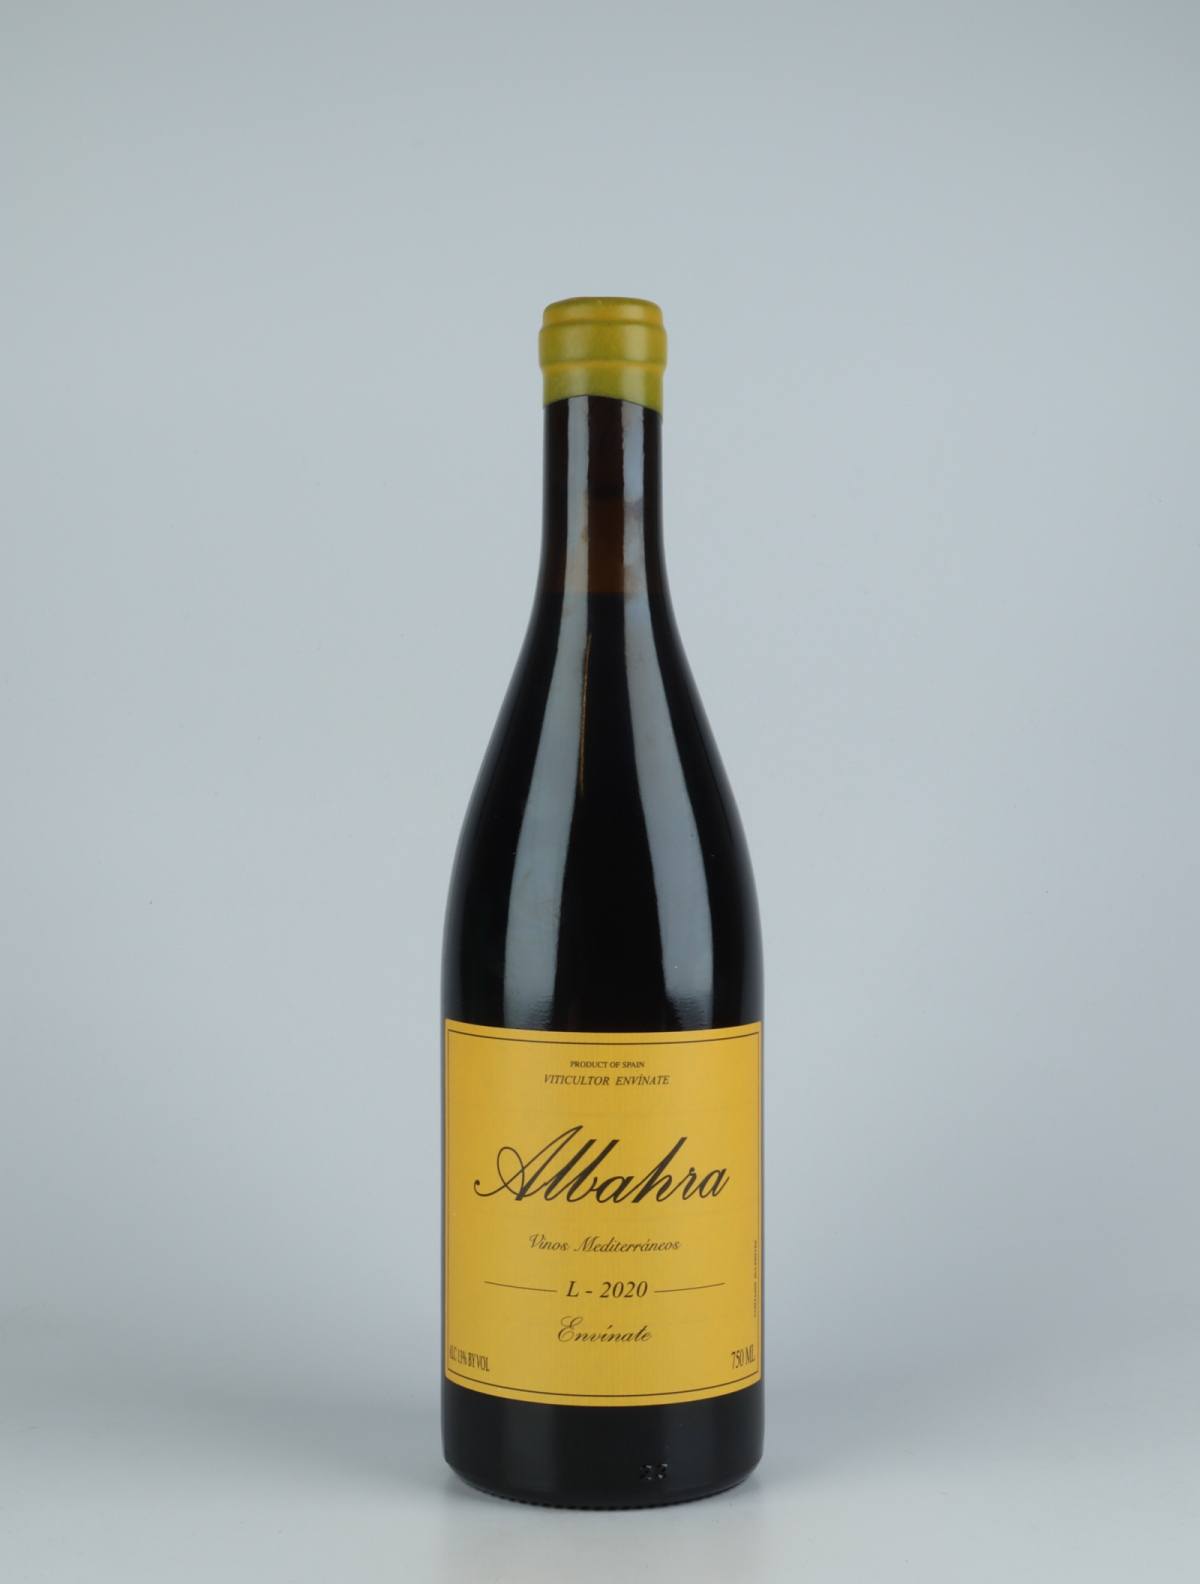 En flaske 2020 Albahra - Almansa Rødvin fra Envínate, Almansa i Spanien